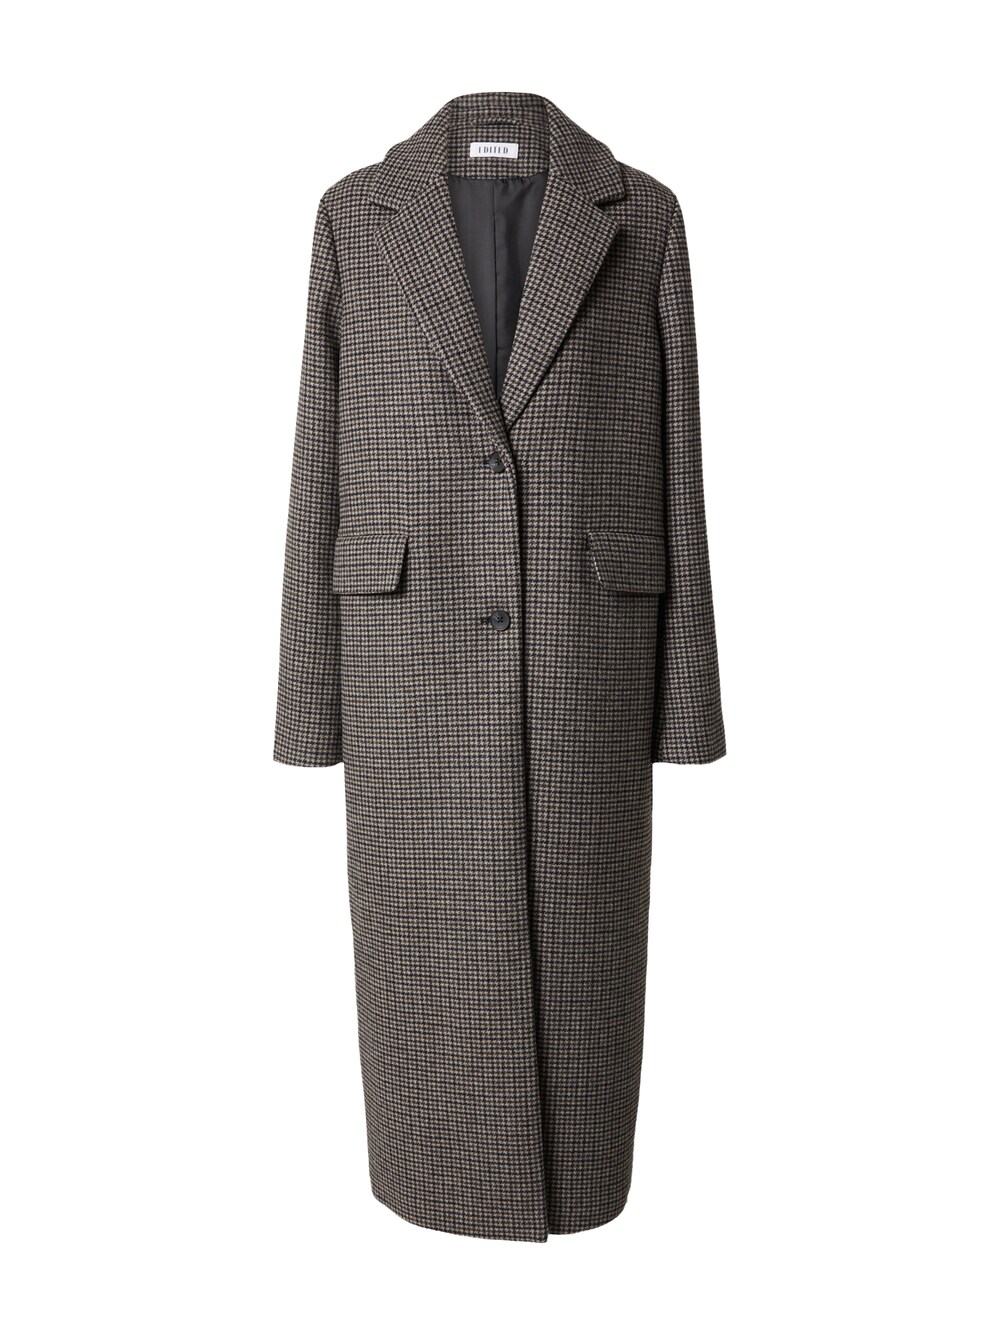 Межсезонное пальто EDITED Ninette, серый